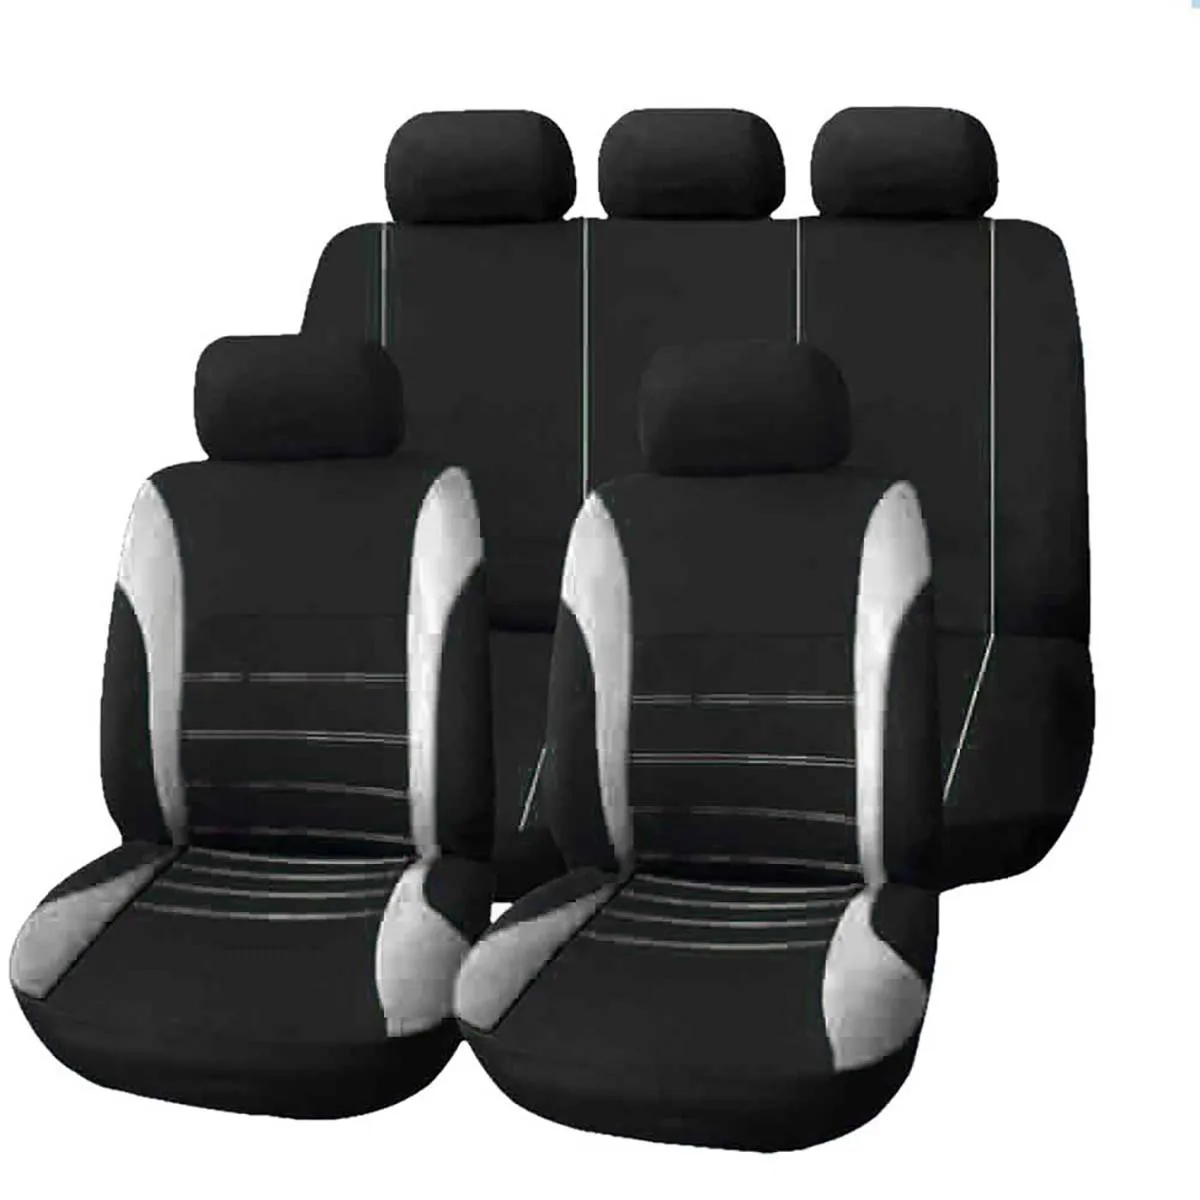 9 шт. универсальные автомобильные чехлы для сидений Авто защитные чехлы автомобильные чехлы для сидений fo kalina grantar lada priora renault logan